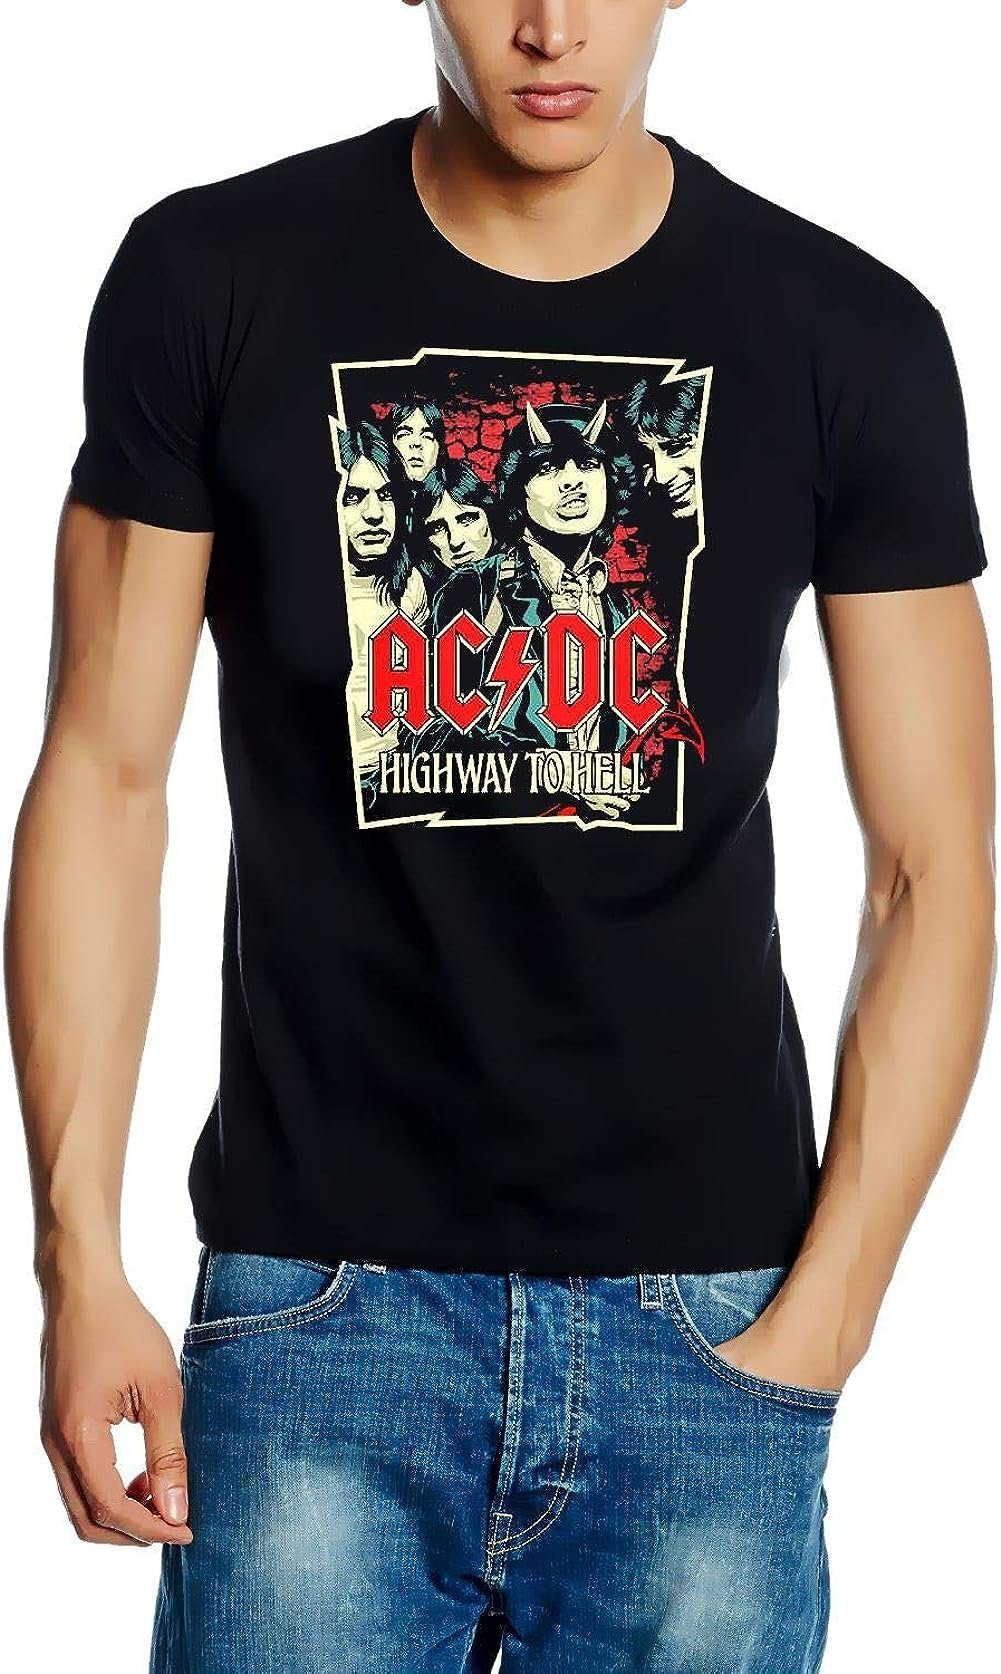 Print-Shirt M Bandshirts T-Shirt S to XXL XL T-Shirt AC/DC Hell L Highway AC/DC Schwarz AC/DC